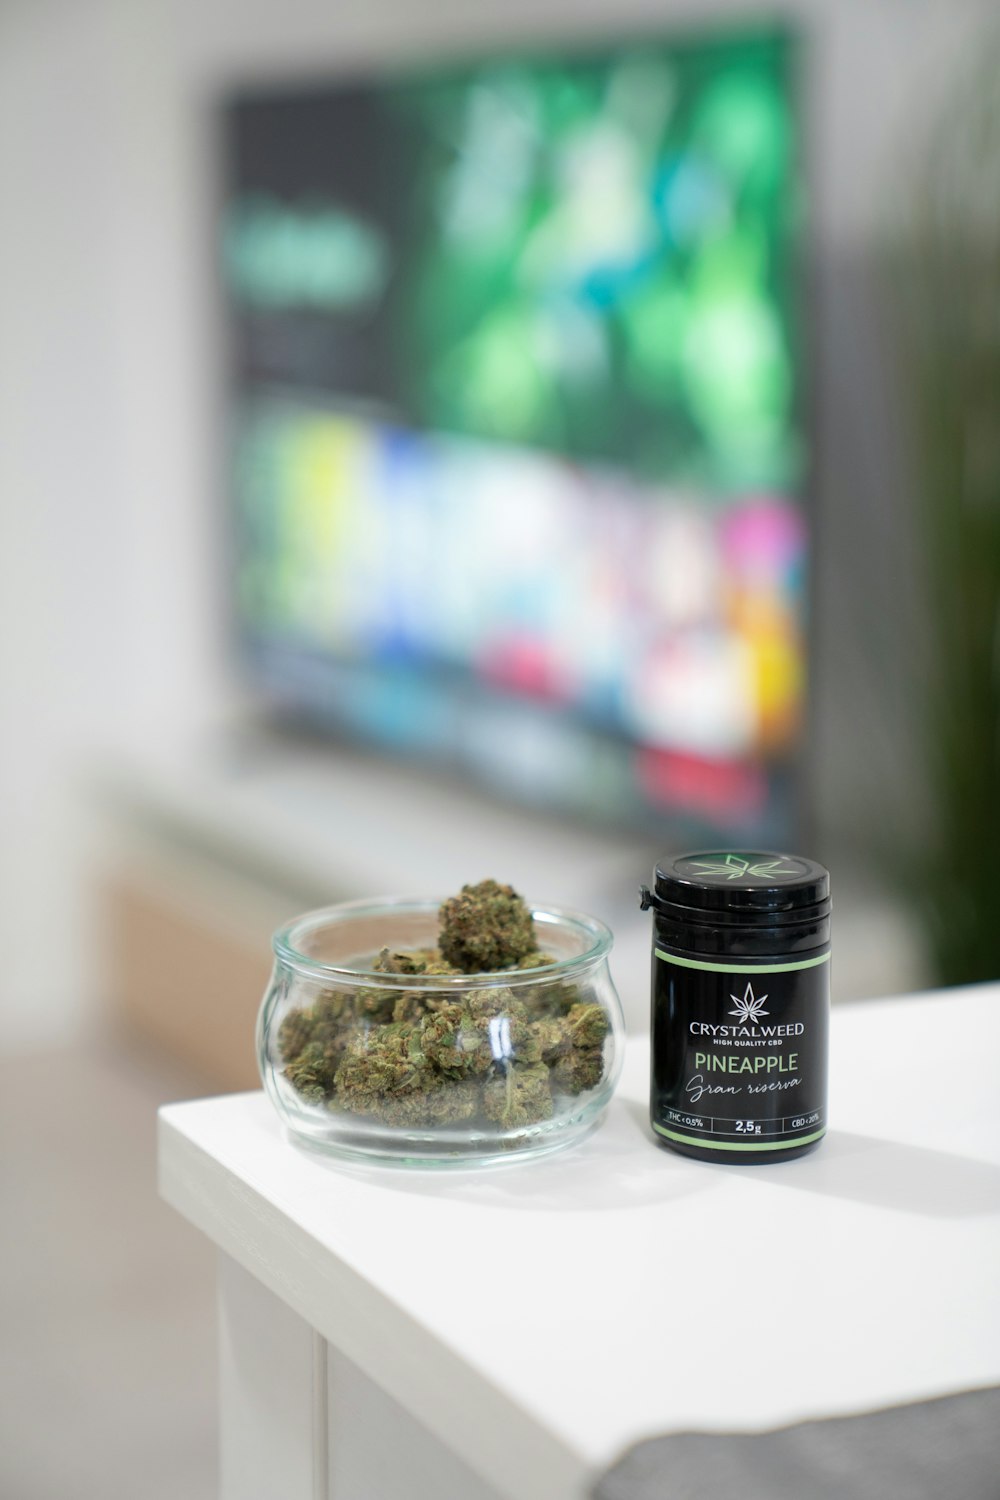 a glass bowl of marijuana next to a tv